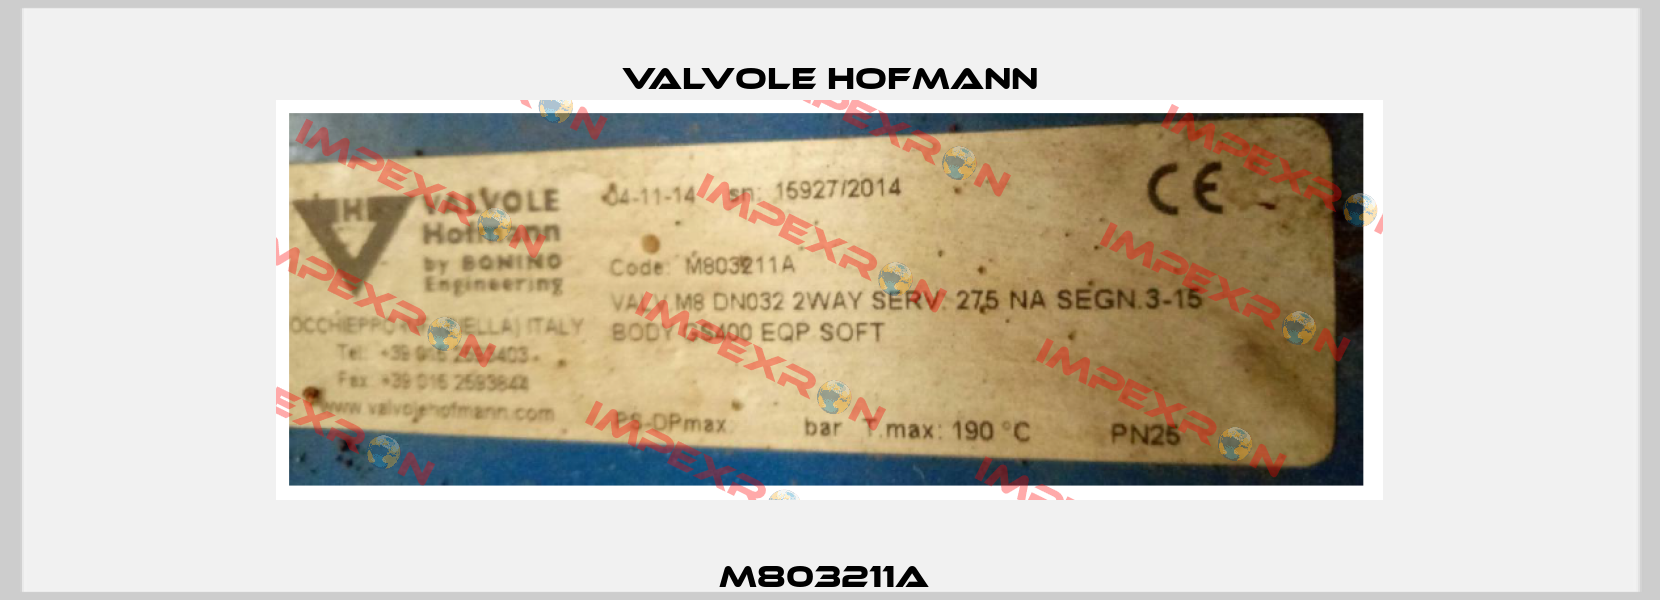 M803211A  Valvole Hofmann